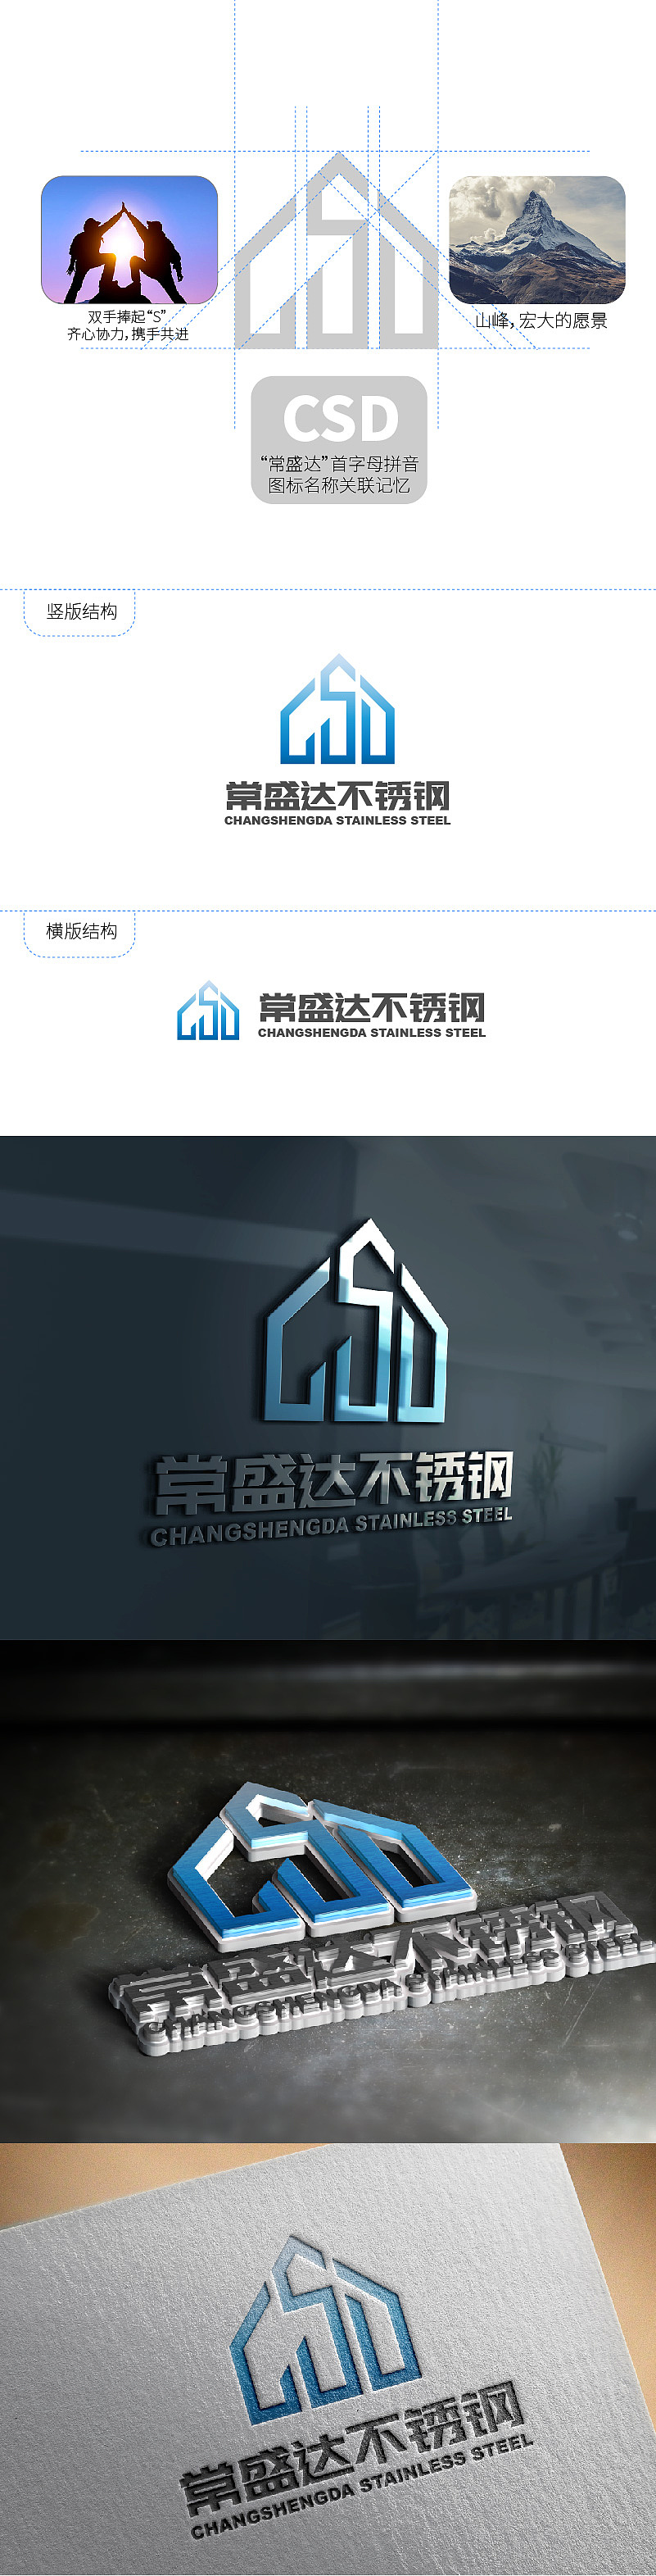 制造业公司logo设计图片